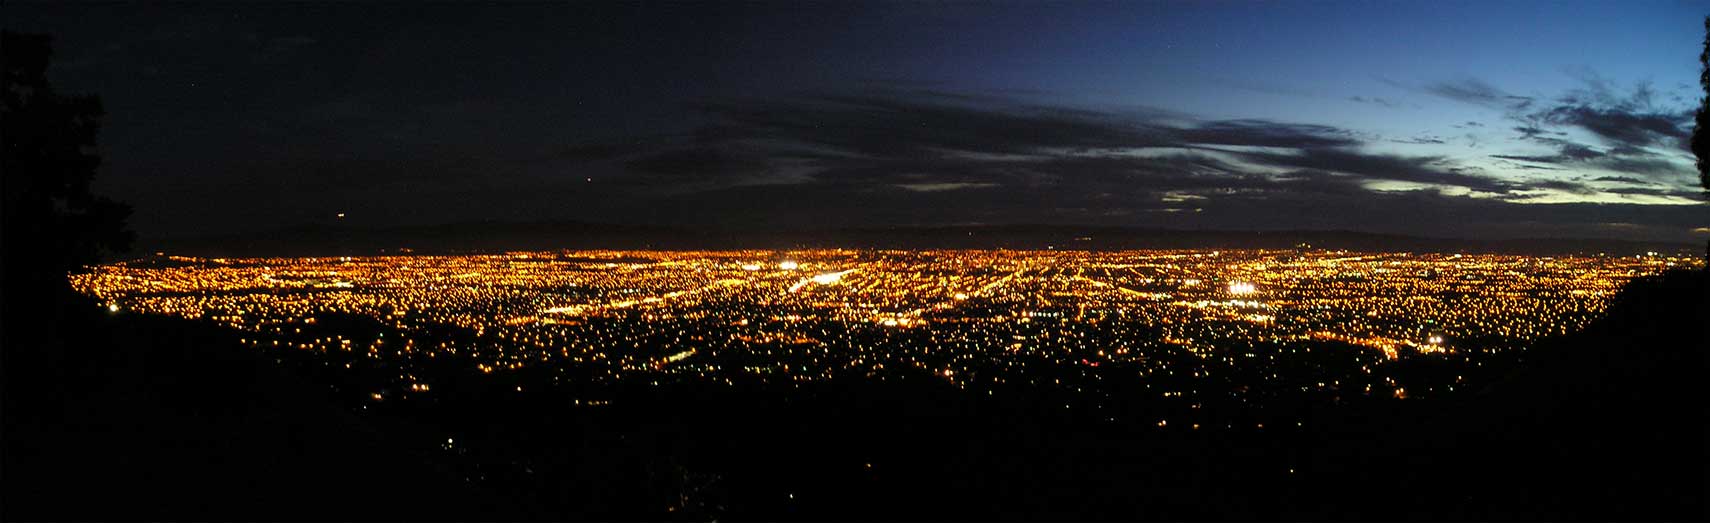 San Jose, Santa Clara Valley, California, at night